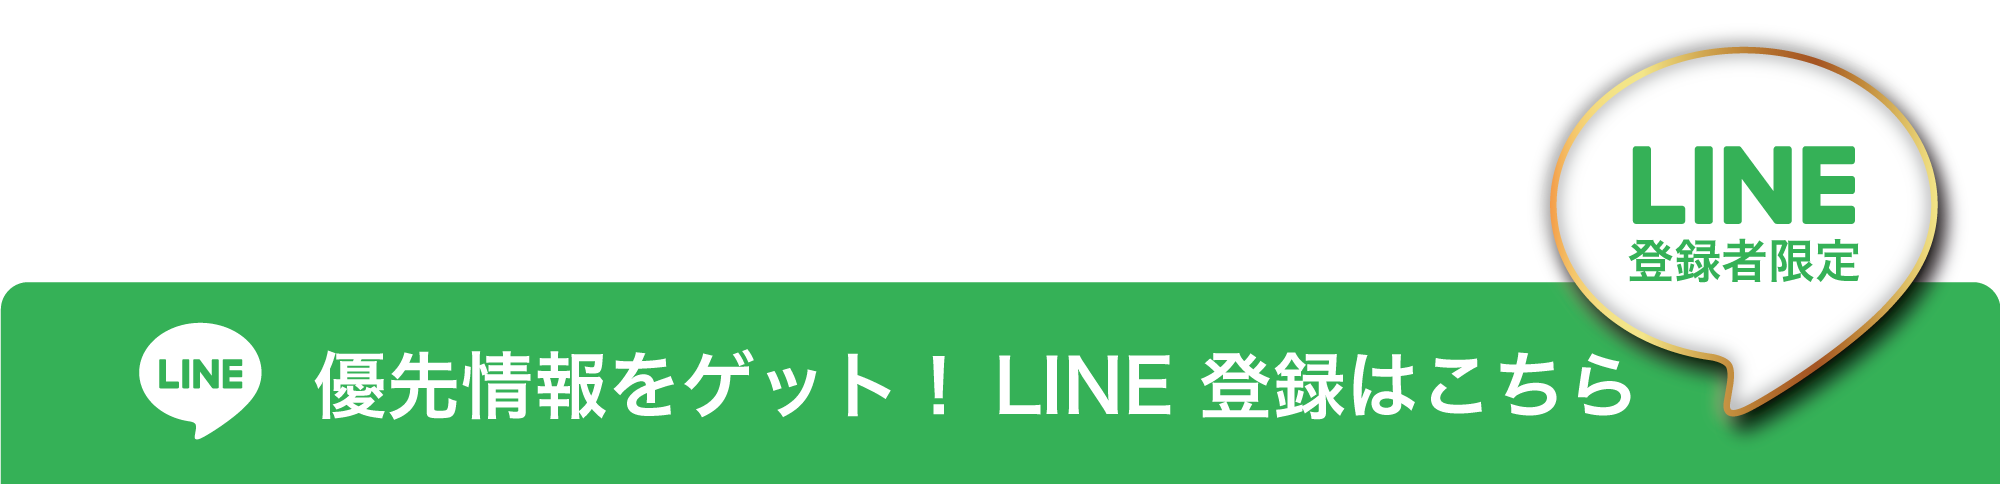 line floating links